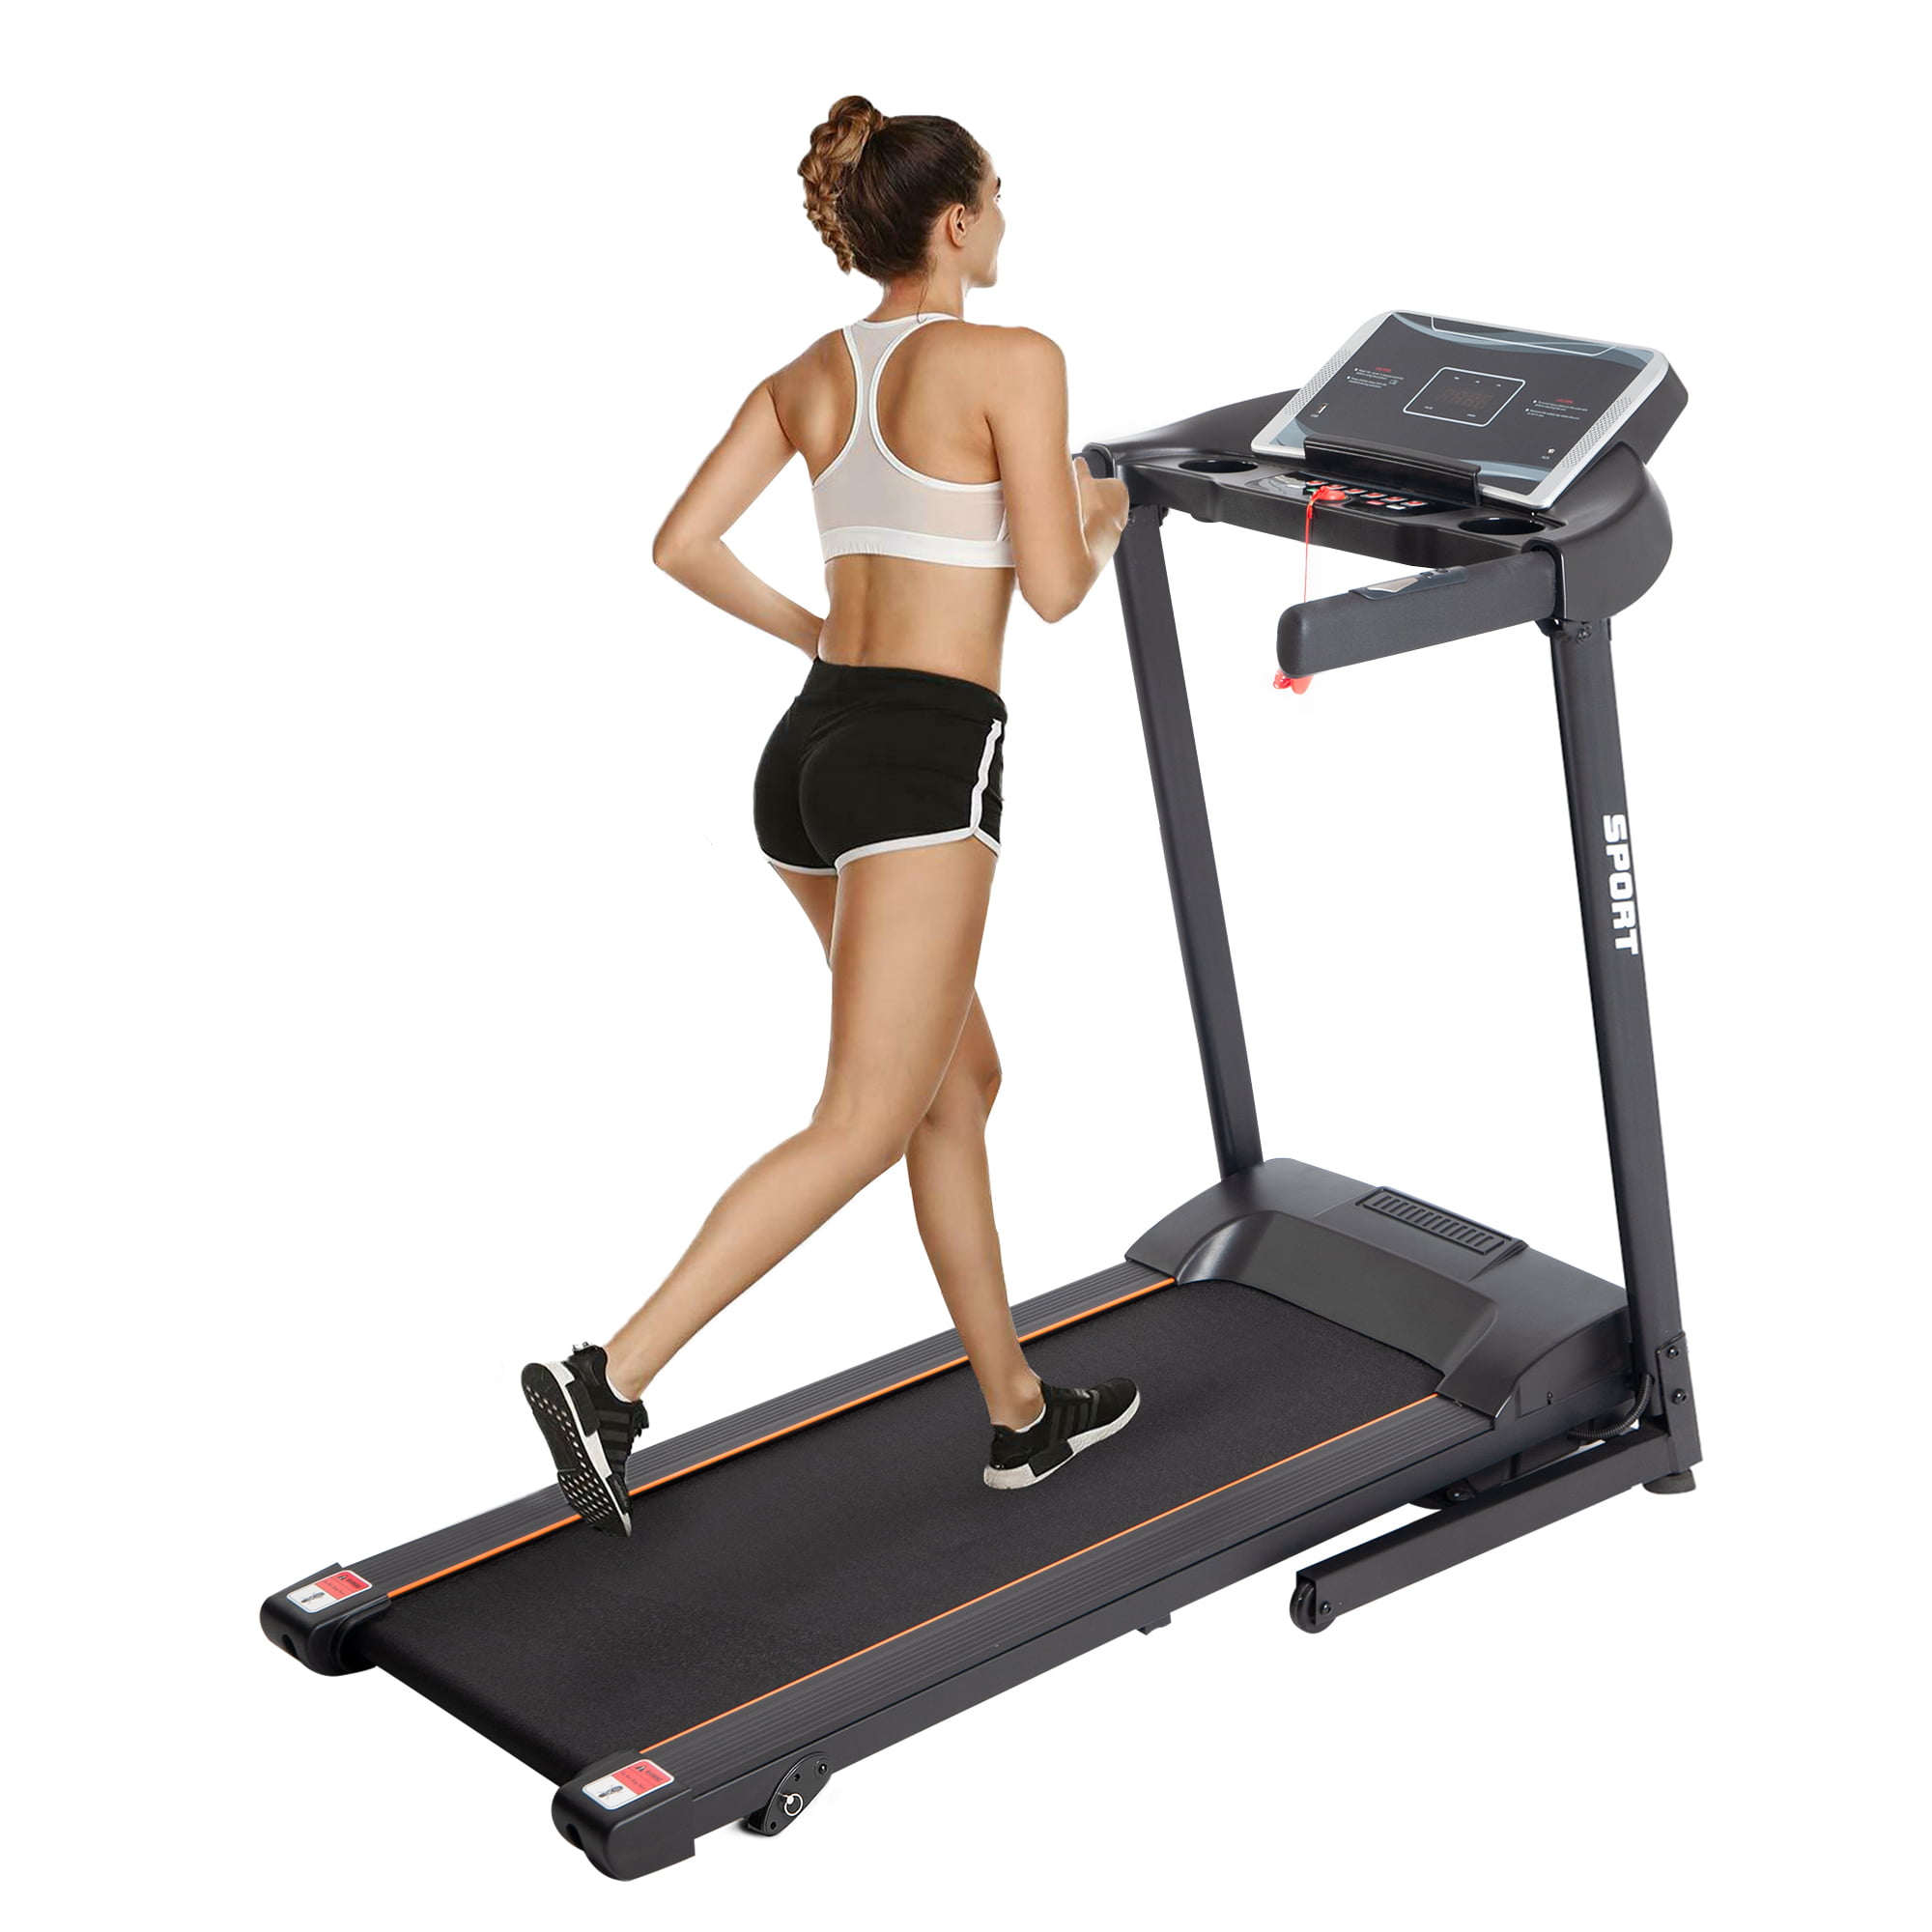 Merax Treadmill Folding Treadmill Motorised Treadmill,3-level adjustable incline,12 Pre-Programs,0.8-16KM/H 